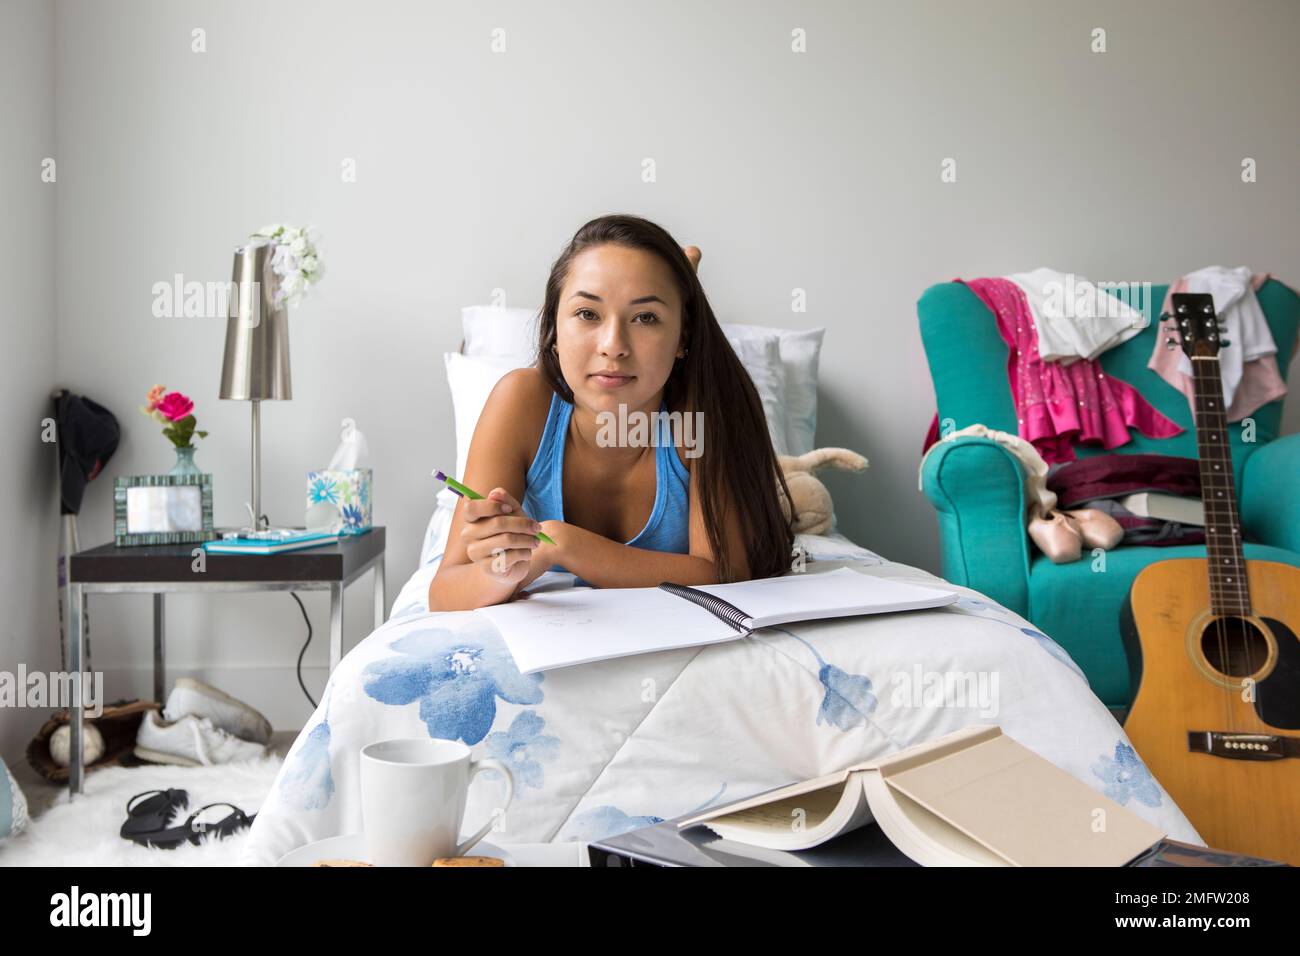 Ein Teenager macht Hausaufgaben auf ihrem Bett in ihrem Schlafzimmer. Stockfoto